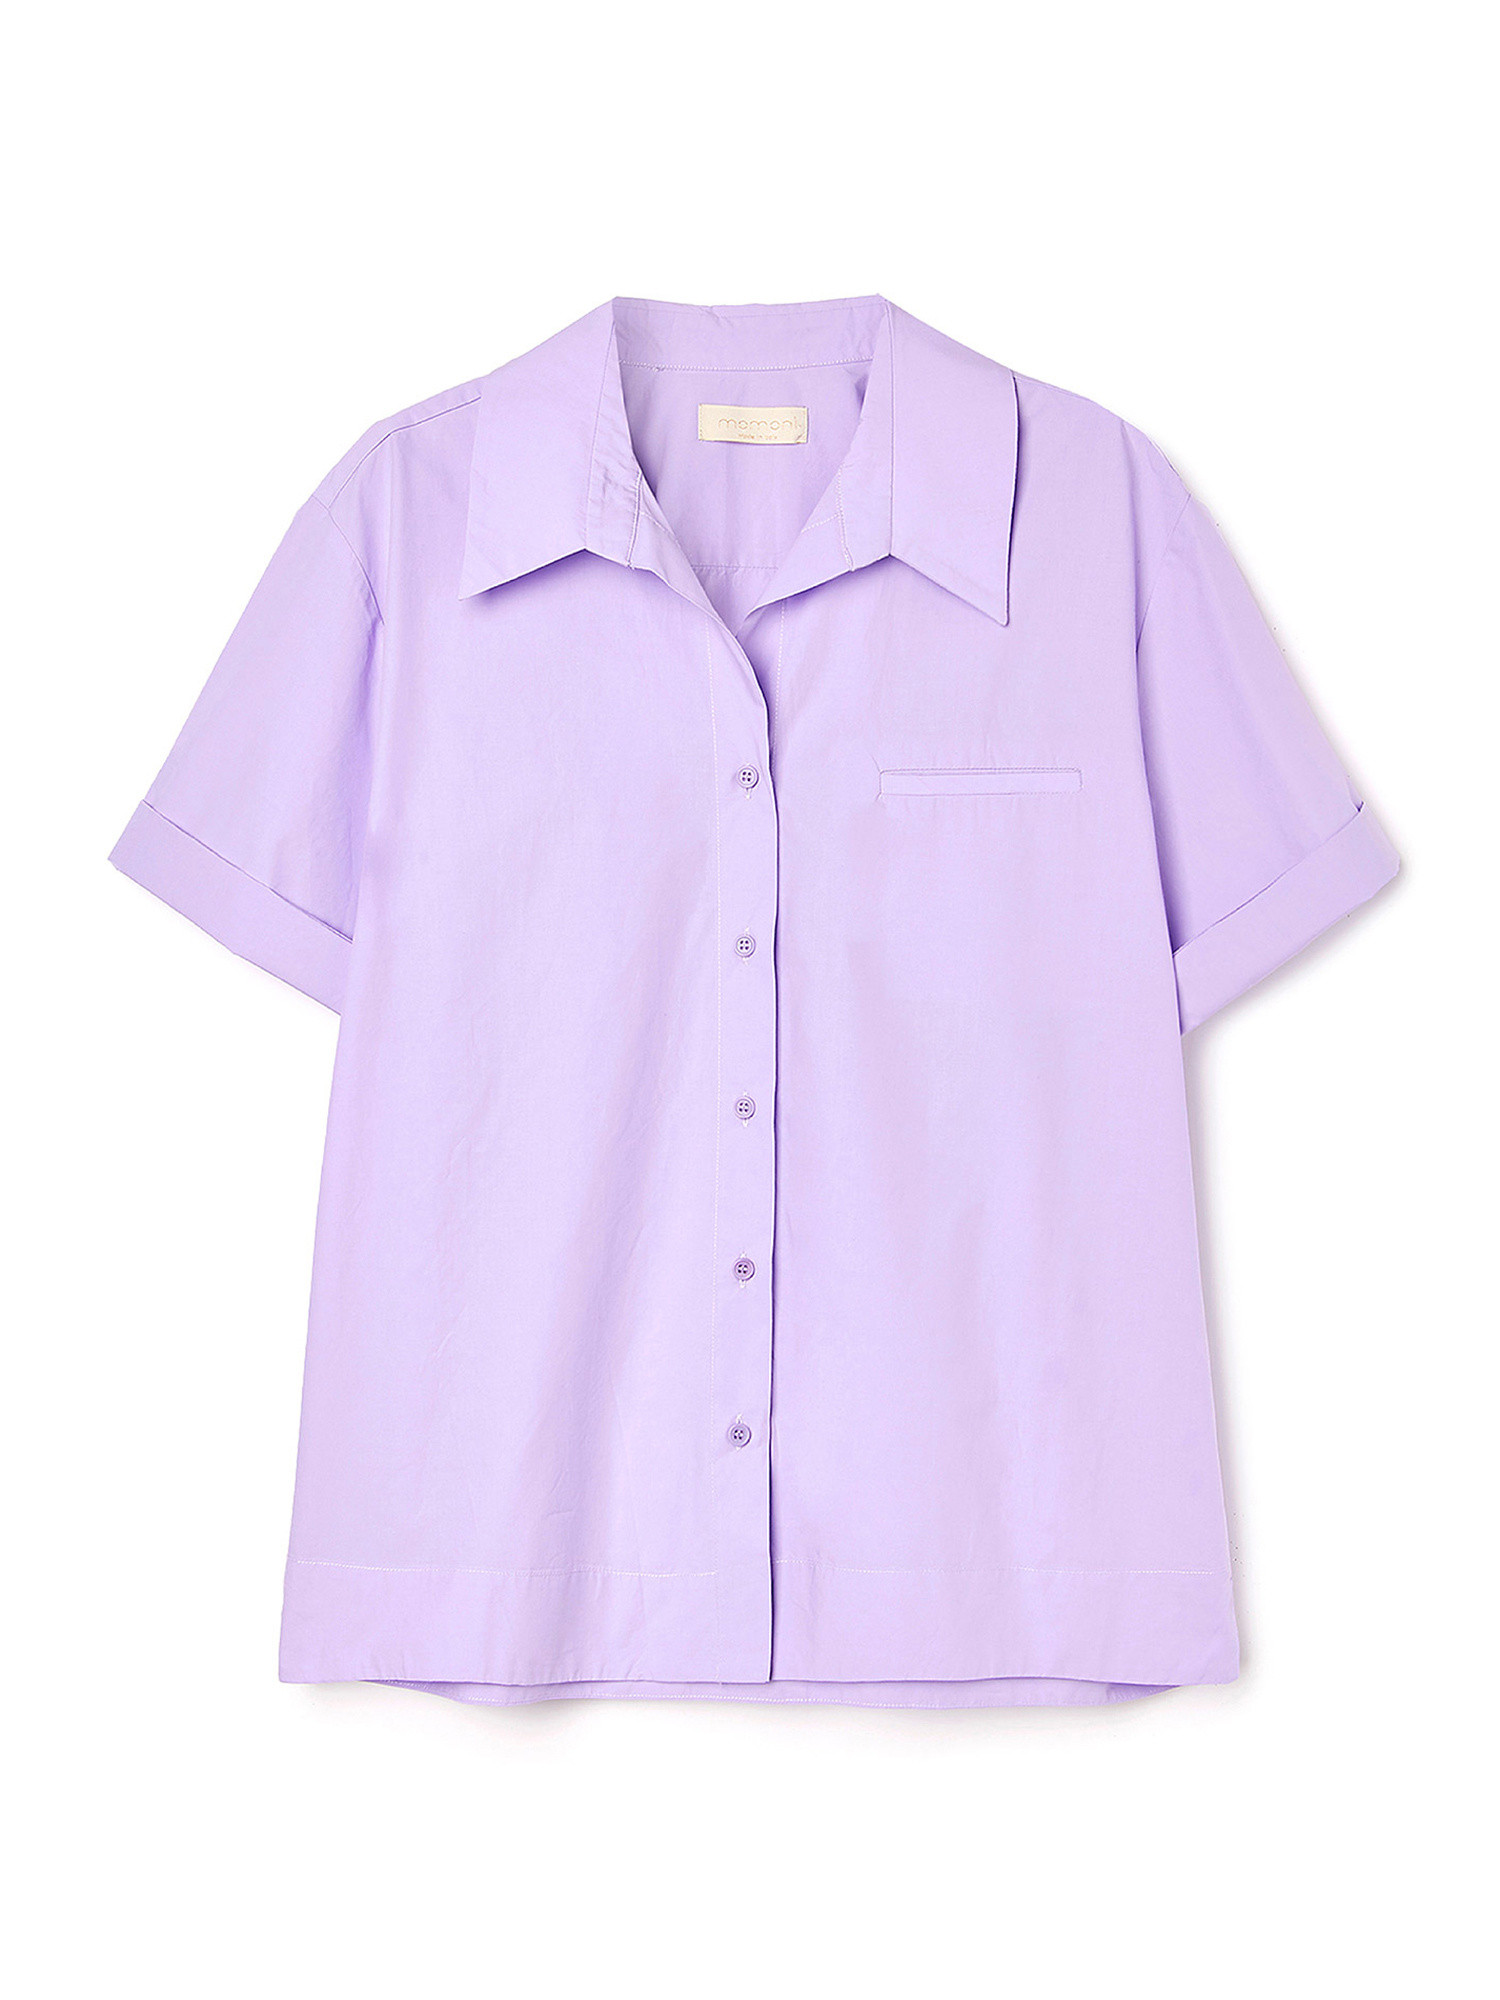 Camicia Frisco in popeline di cotone, Viola, large